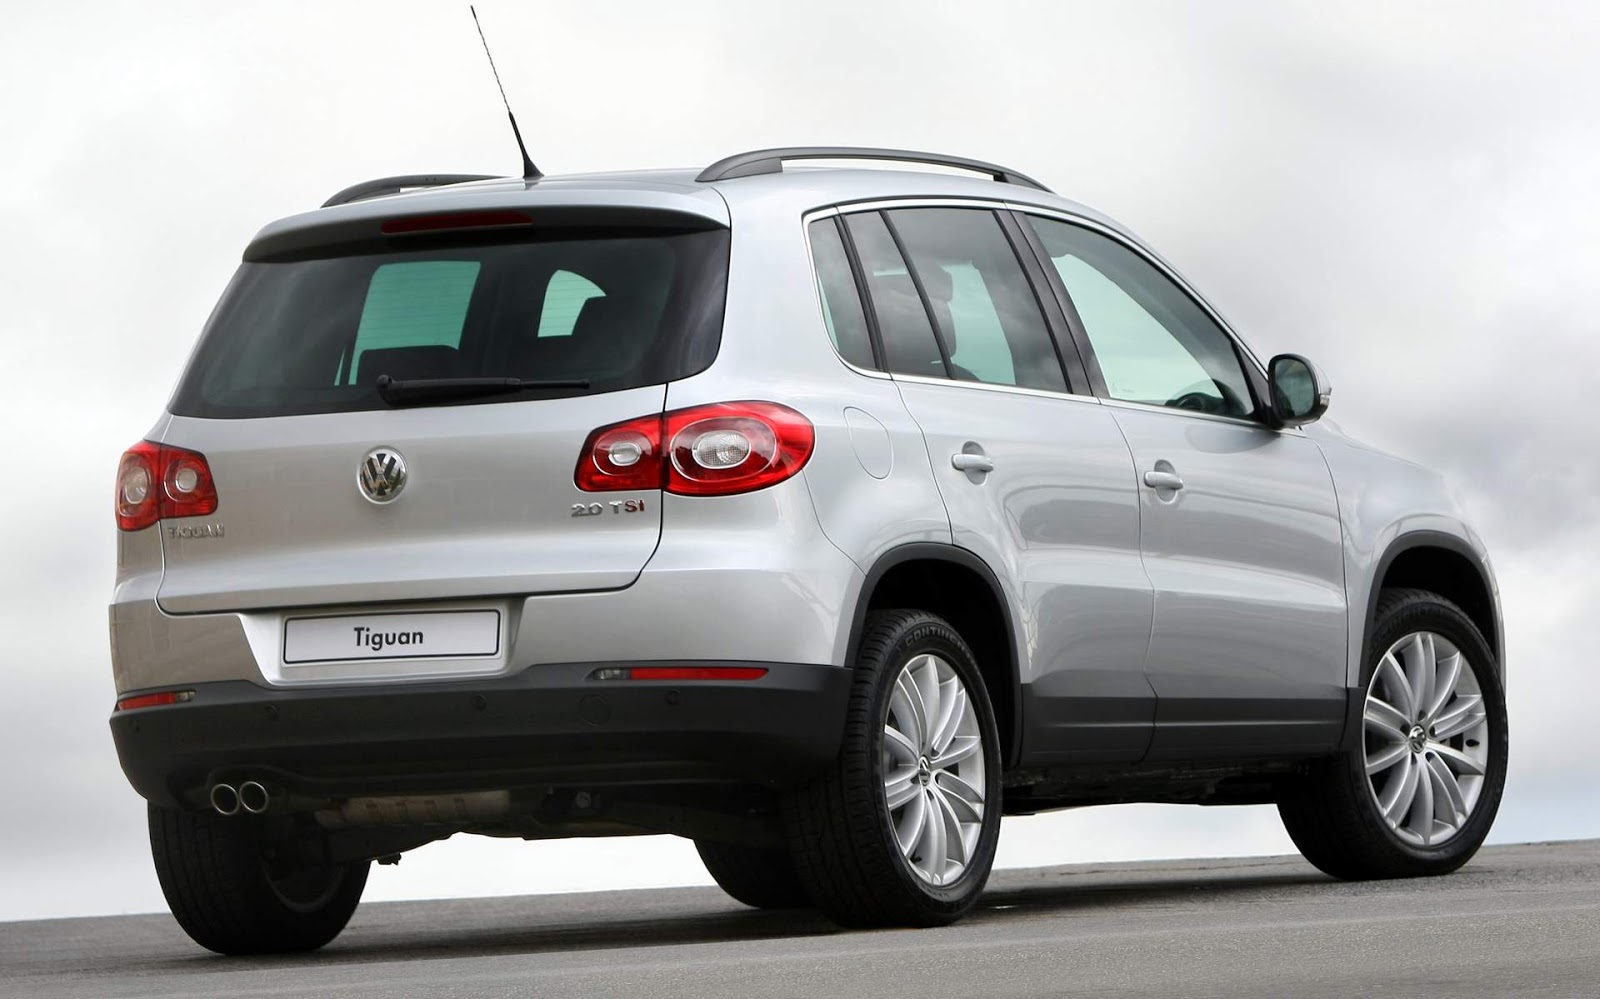 Volkswagen Tiguan 2010 fotos e especificações oficiais